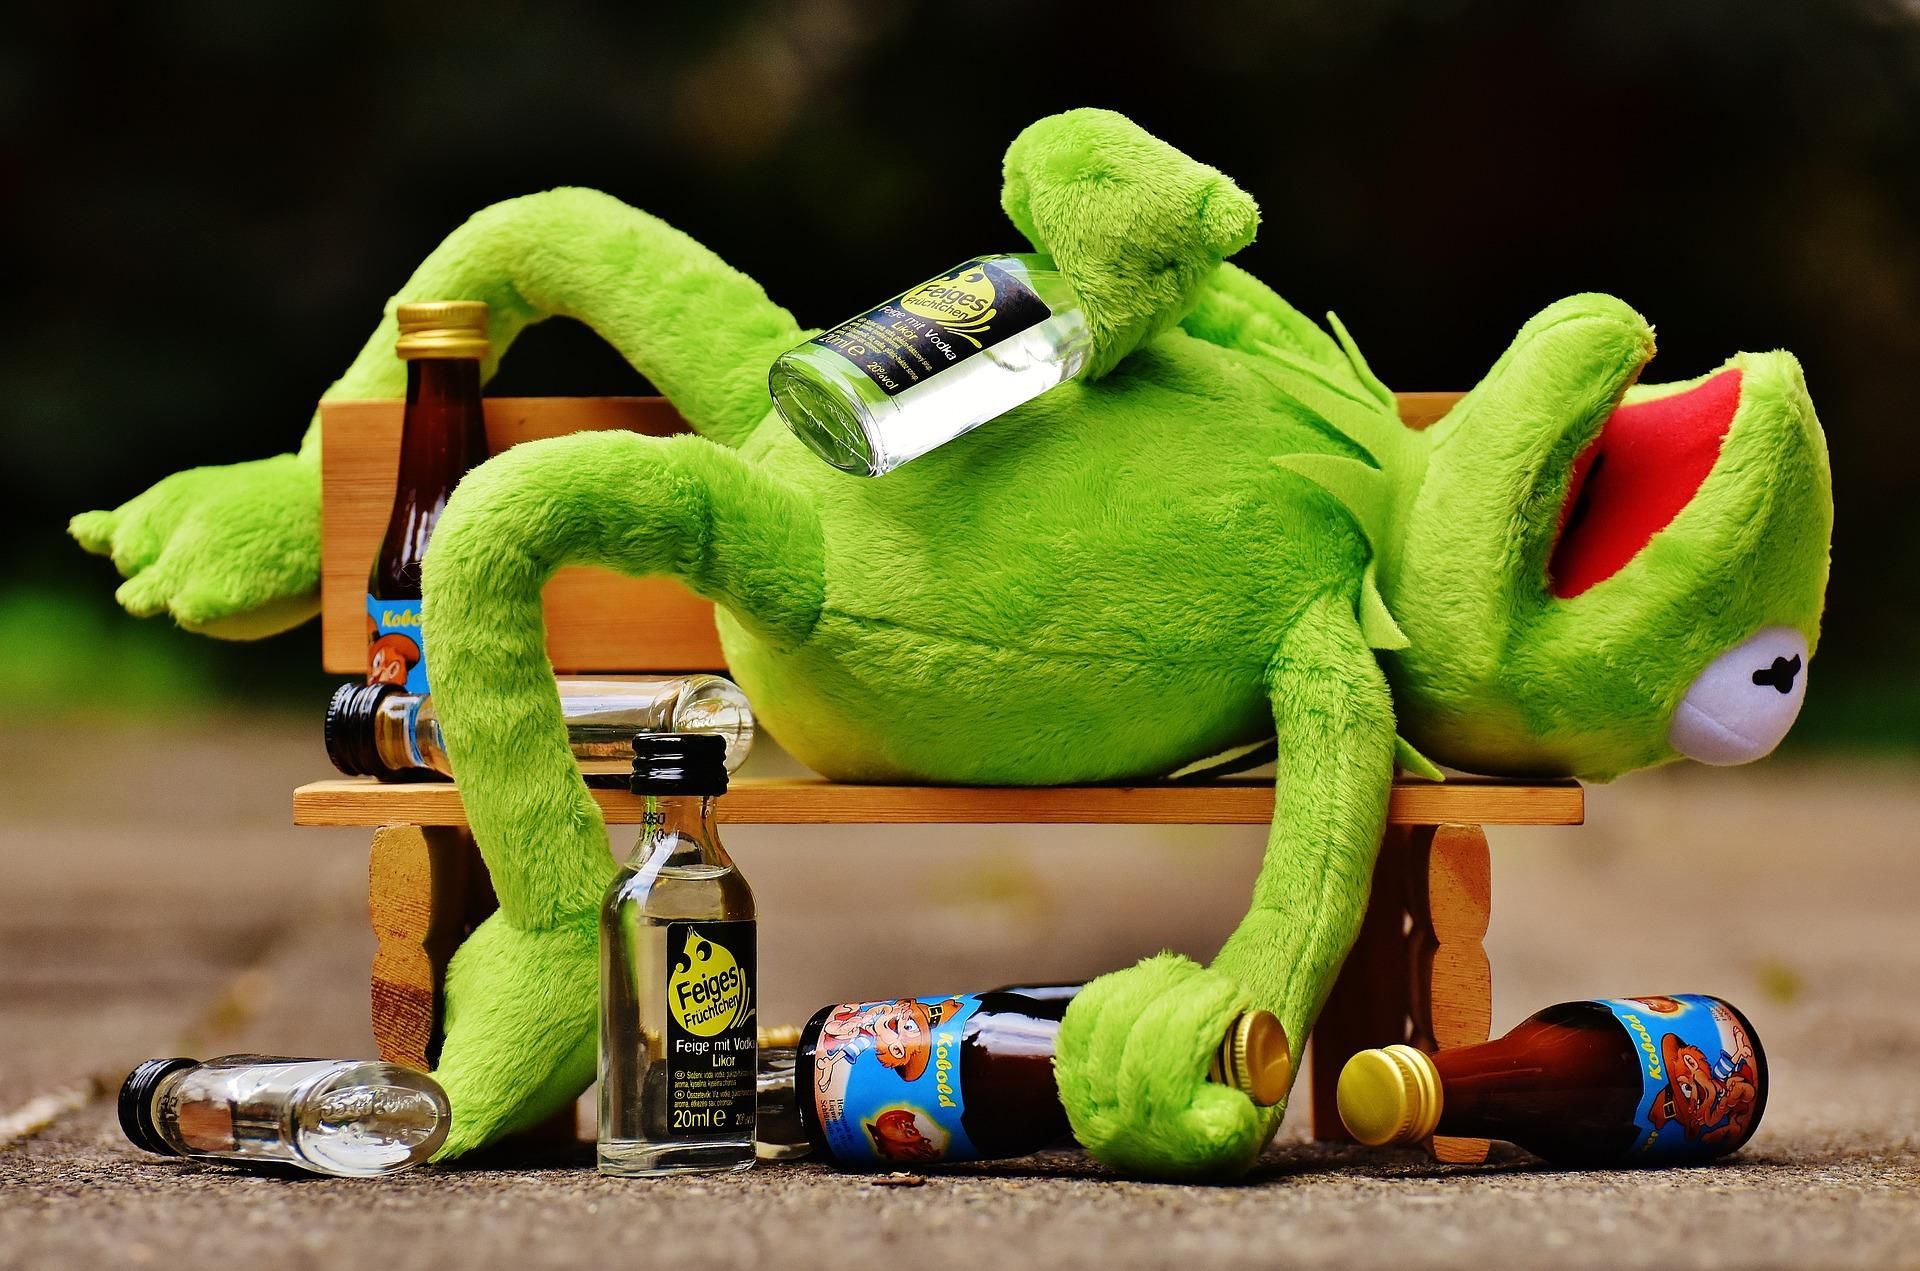 Употребляй с умом: как пить алкоголь, чтобы не испортить себе праздники